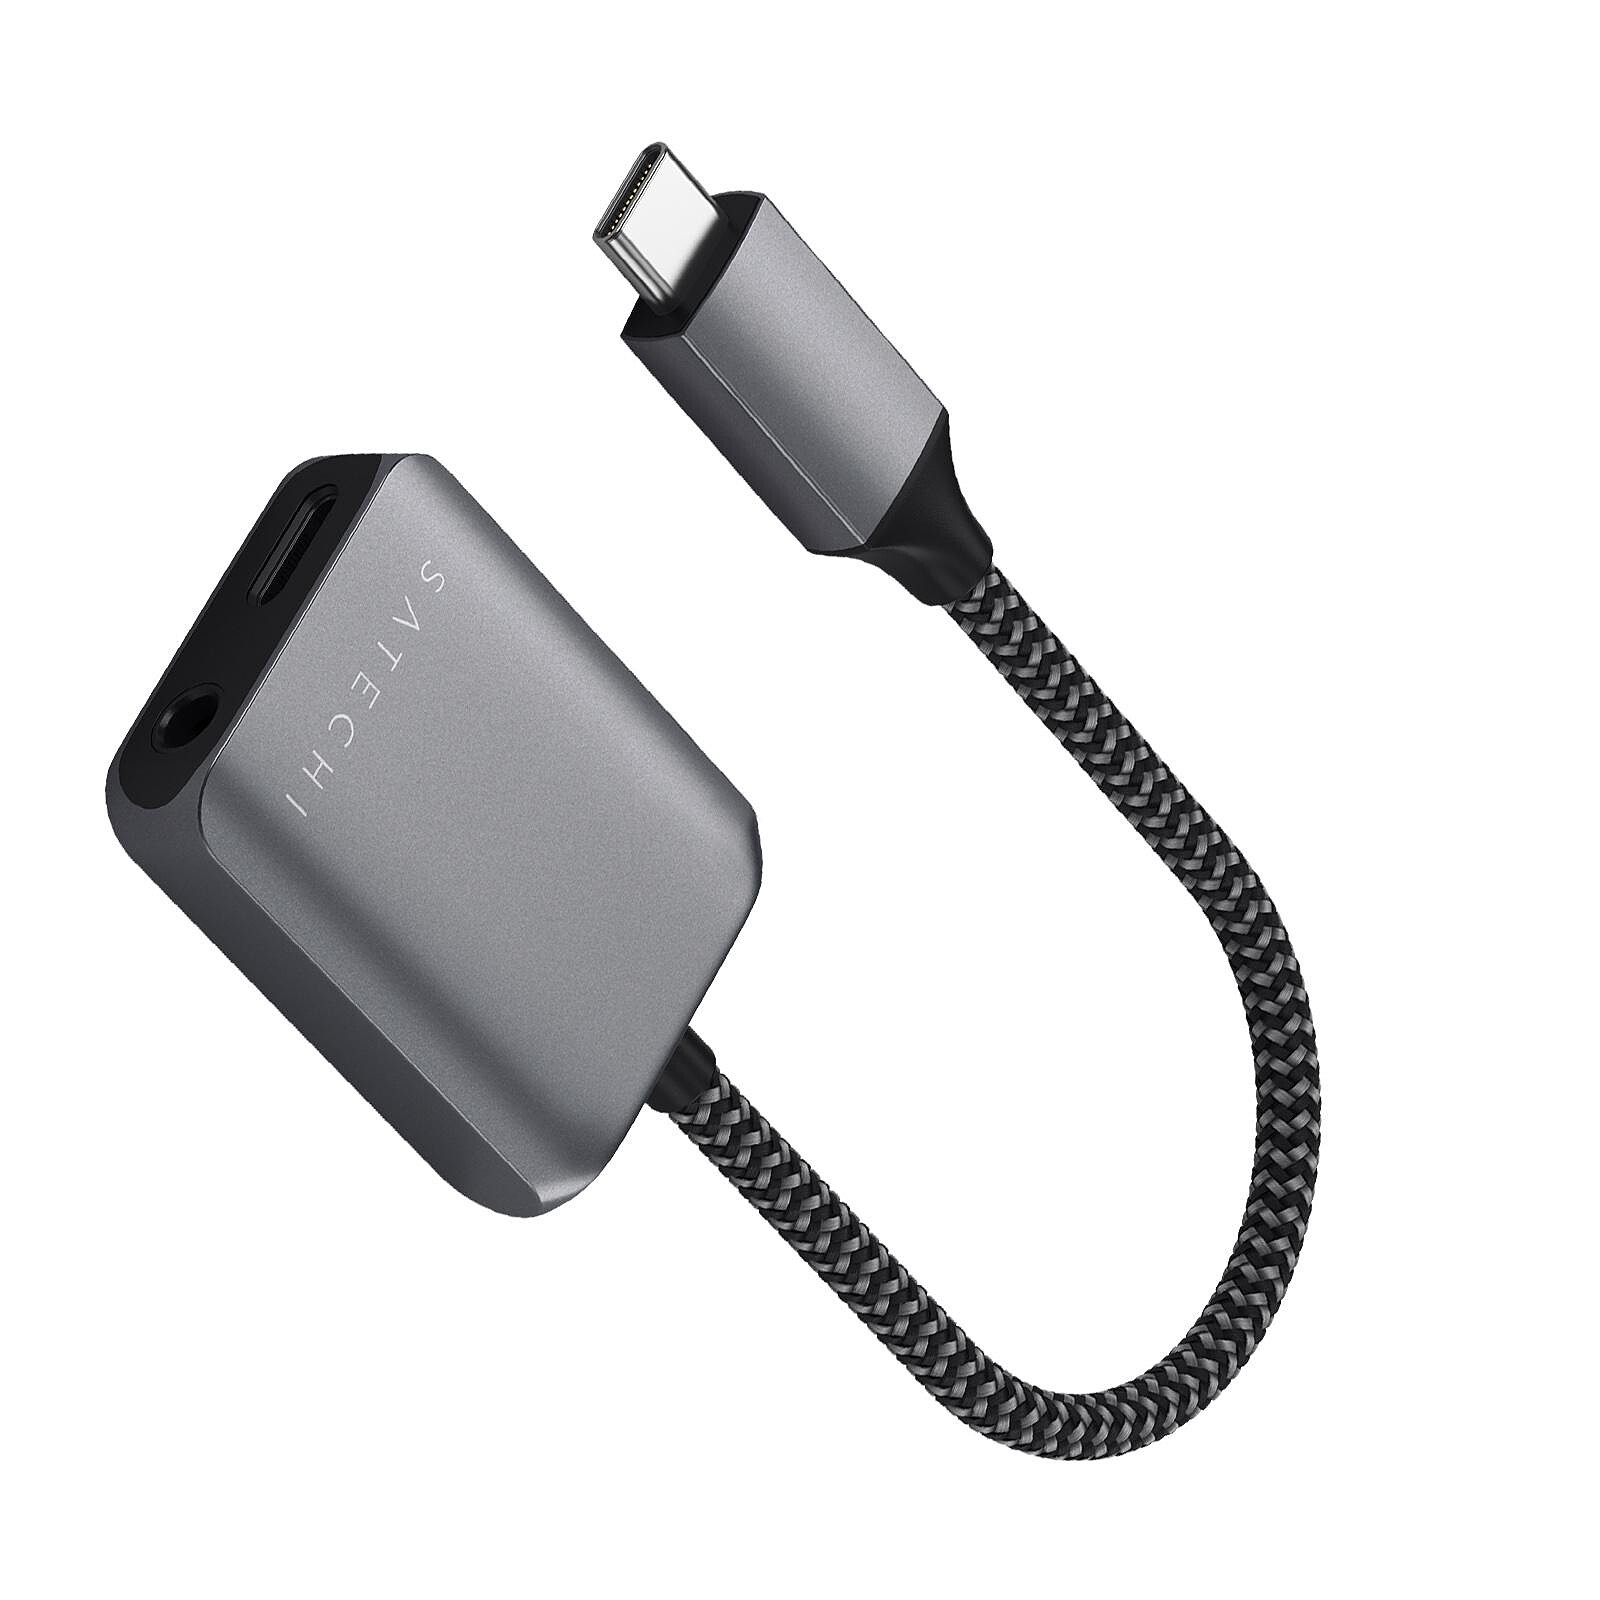 Adaptateur USB-C vers Dual USB-C Femelle Charge Rapide 60W + Audio, Belkin  - Noir